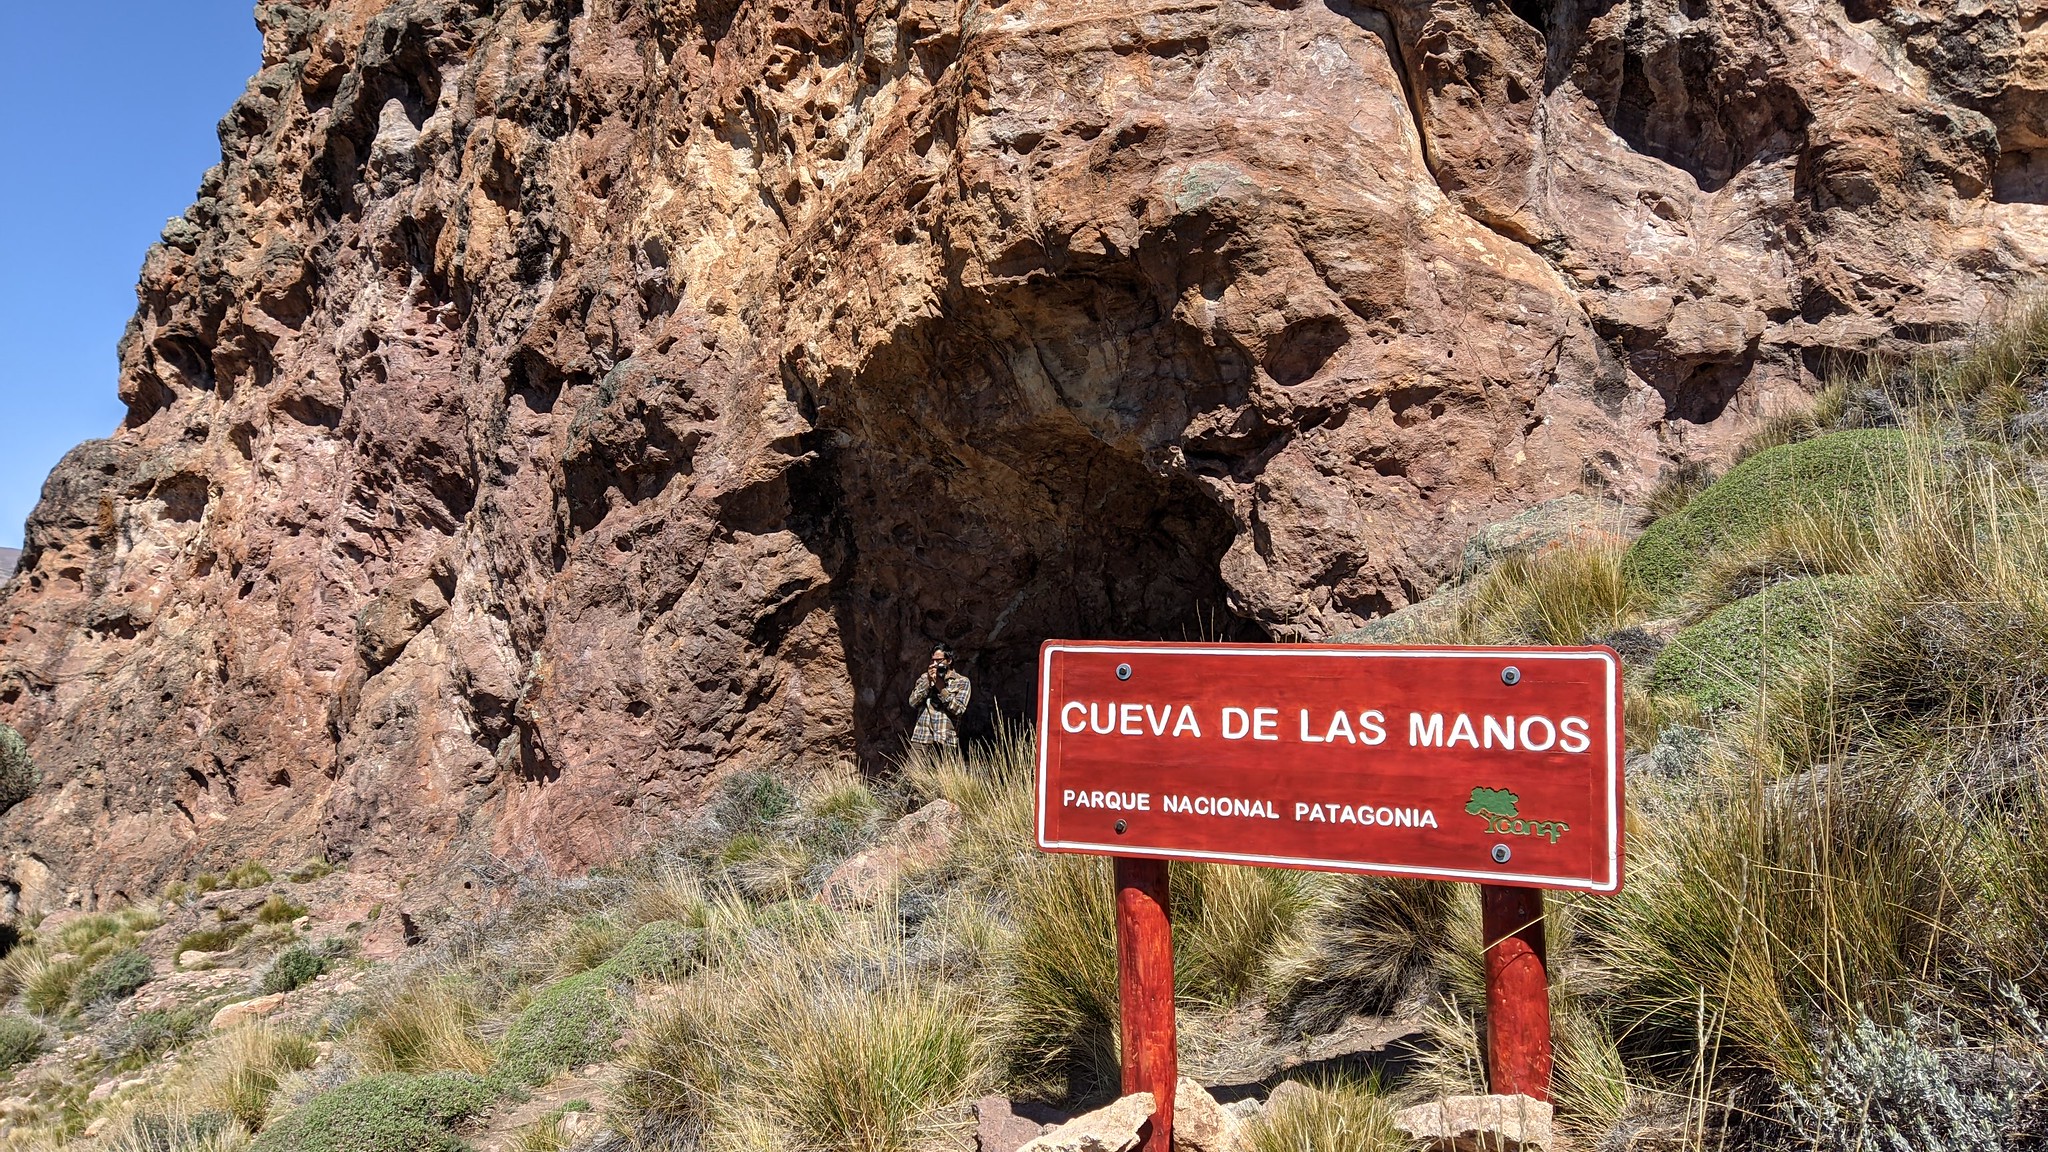 Denuncian grave daño patrimonial en el Parque Nacional Patagonia: Rayaron las pinturas rupestres de la Cueva de las Manos